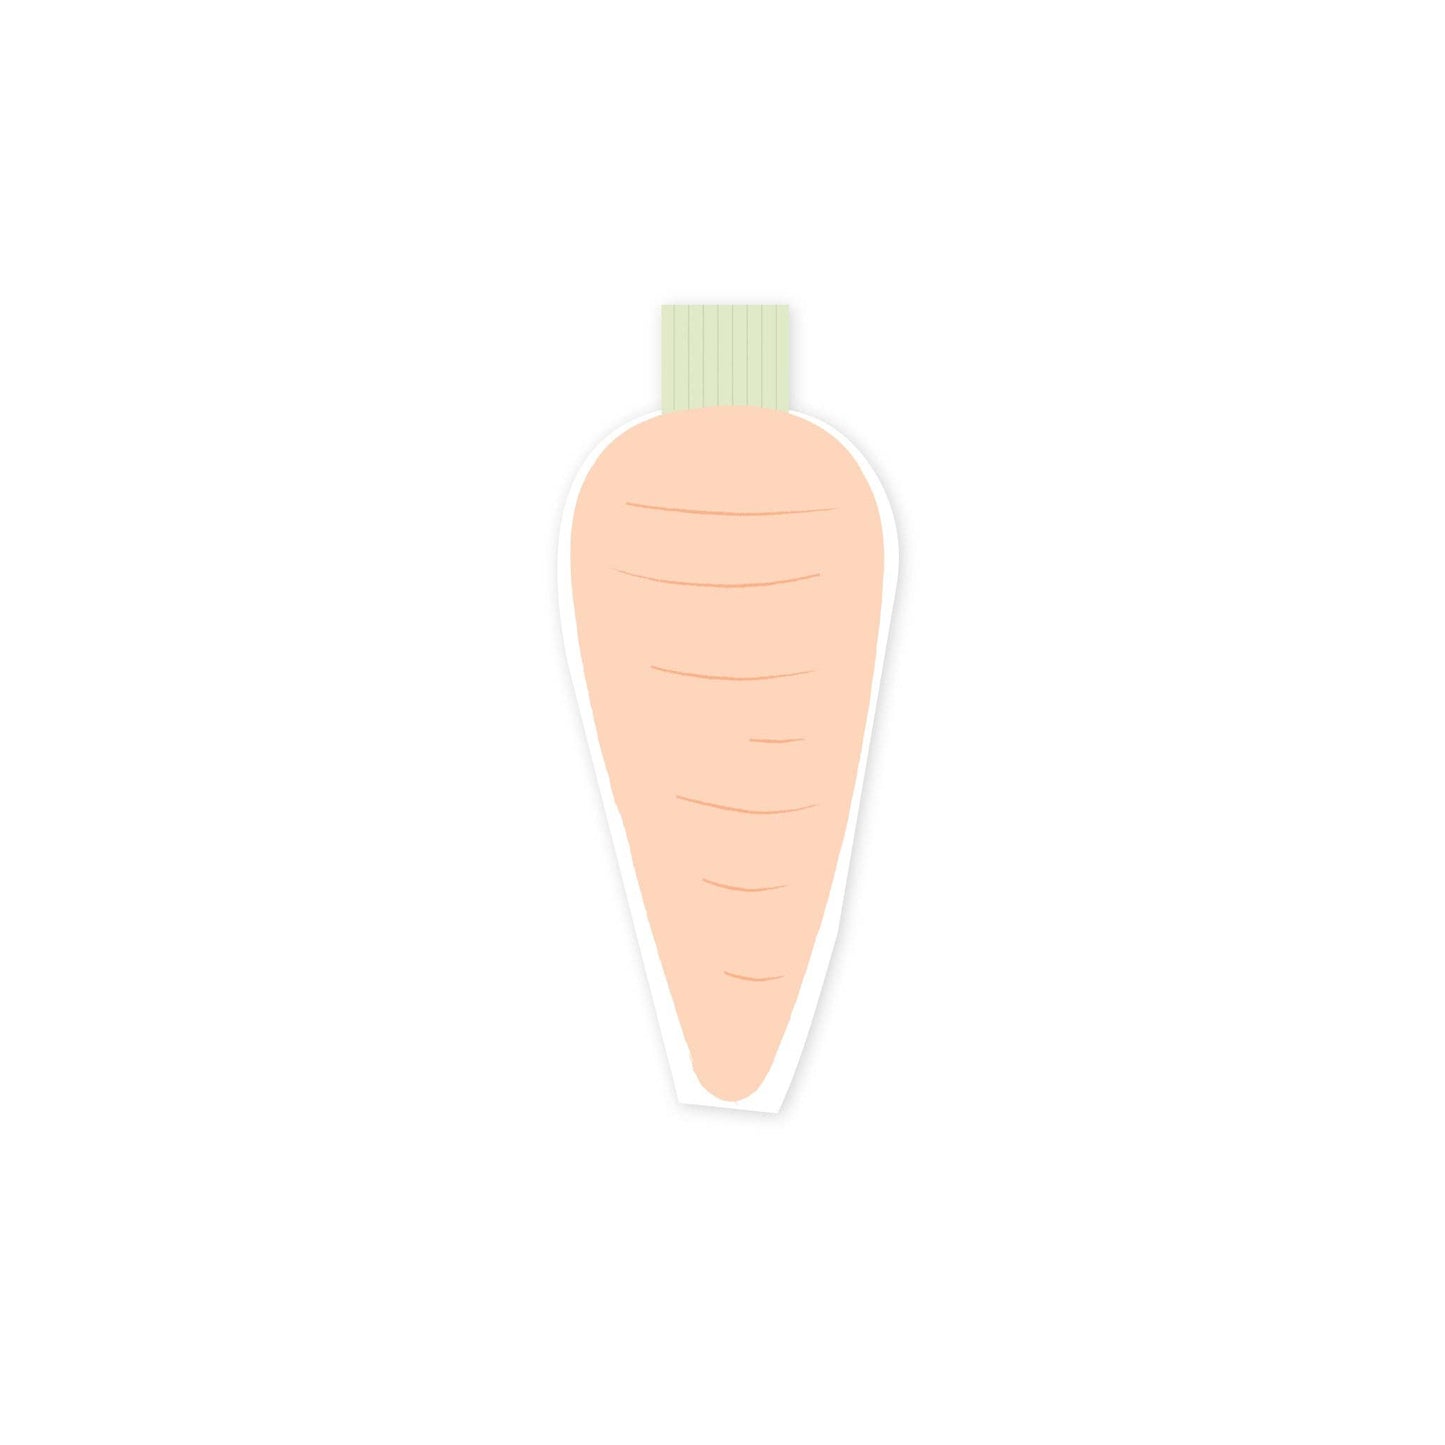 Carrot Shaped Napkin